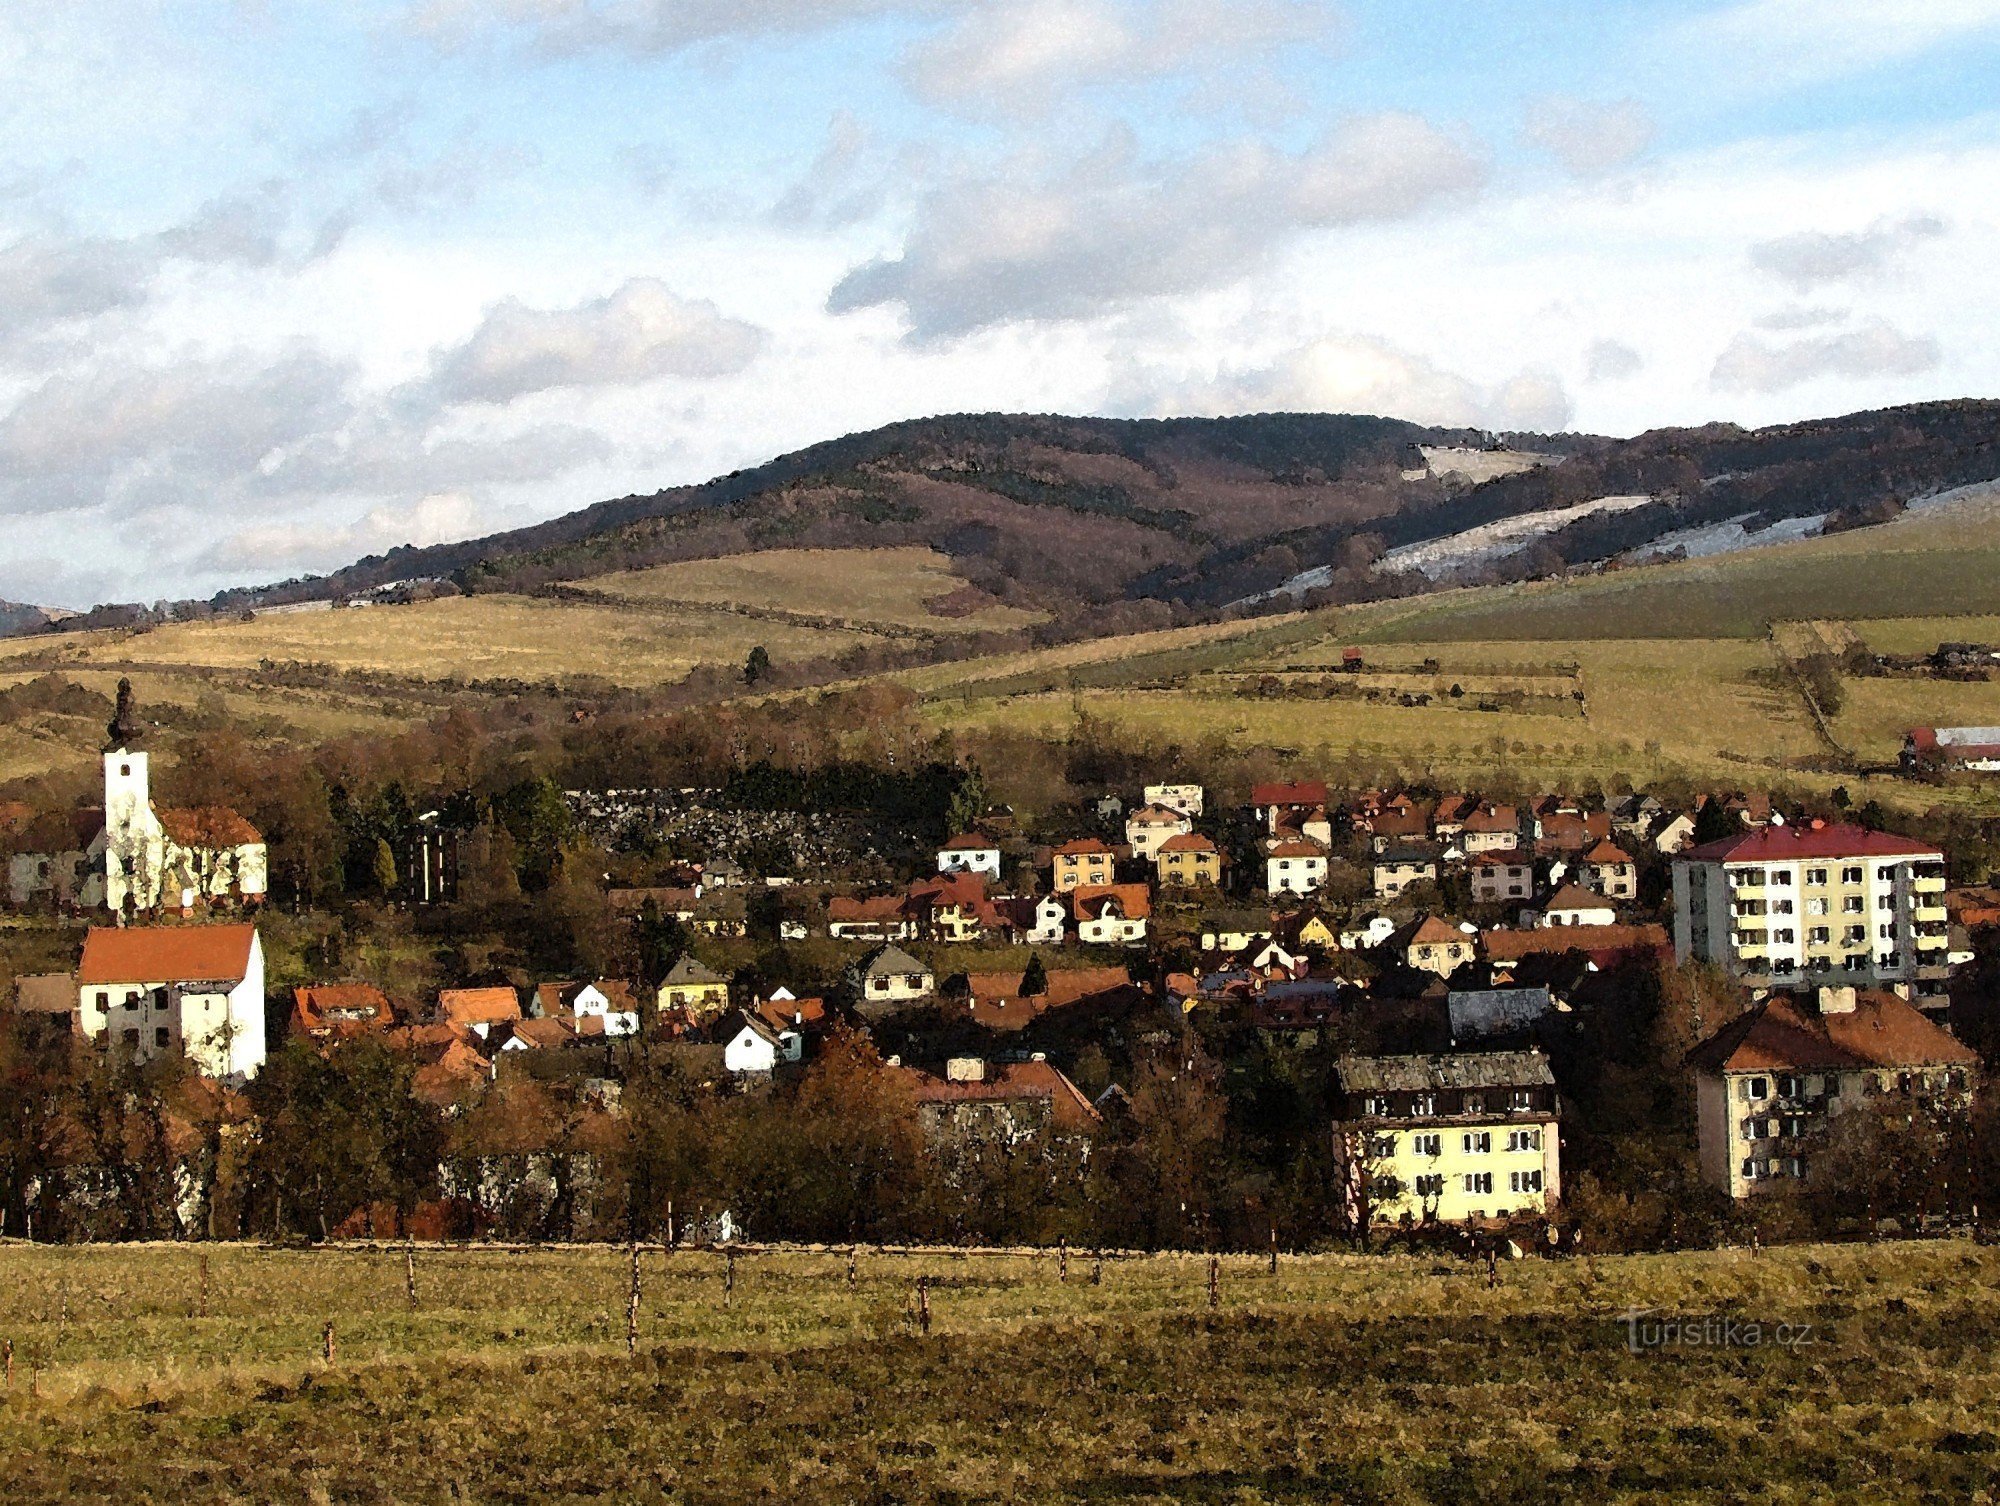 die Stadt Brumov - Bylnice im Hintergrund mit Holý vrch